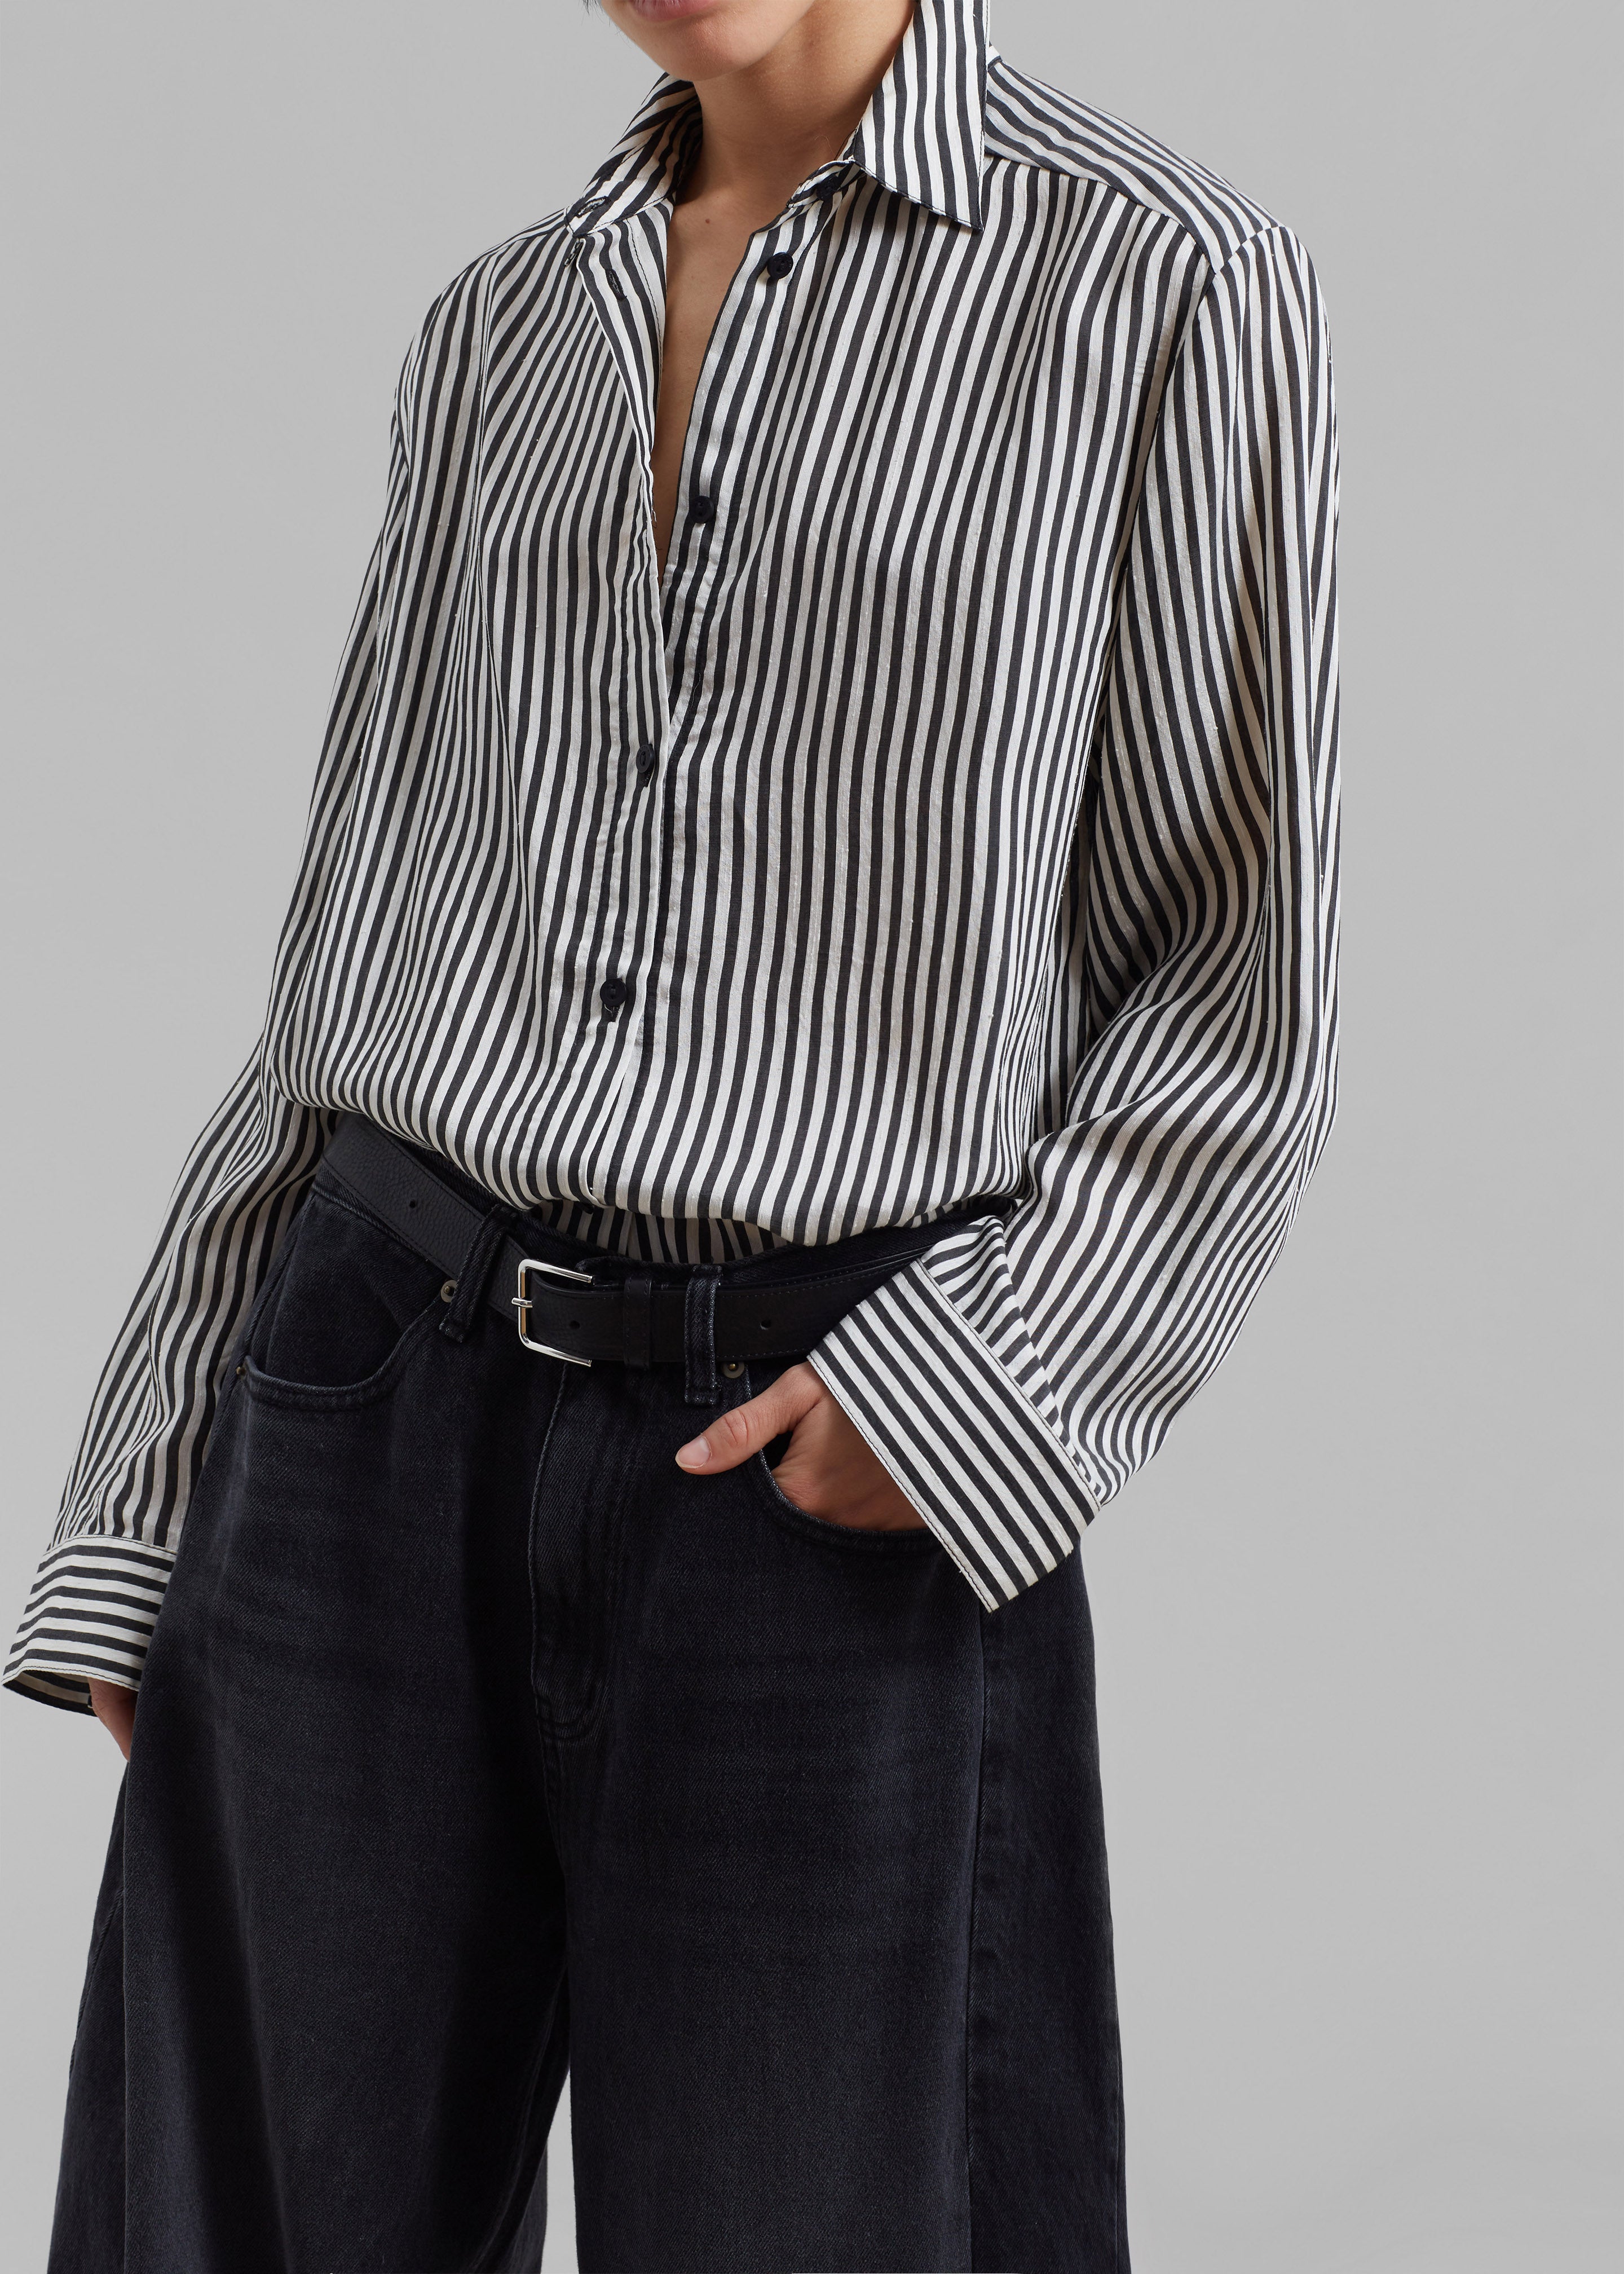 Matteau Classic Contrast Stripe Shirt - Ink Stripe - 3